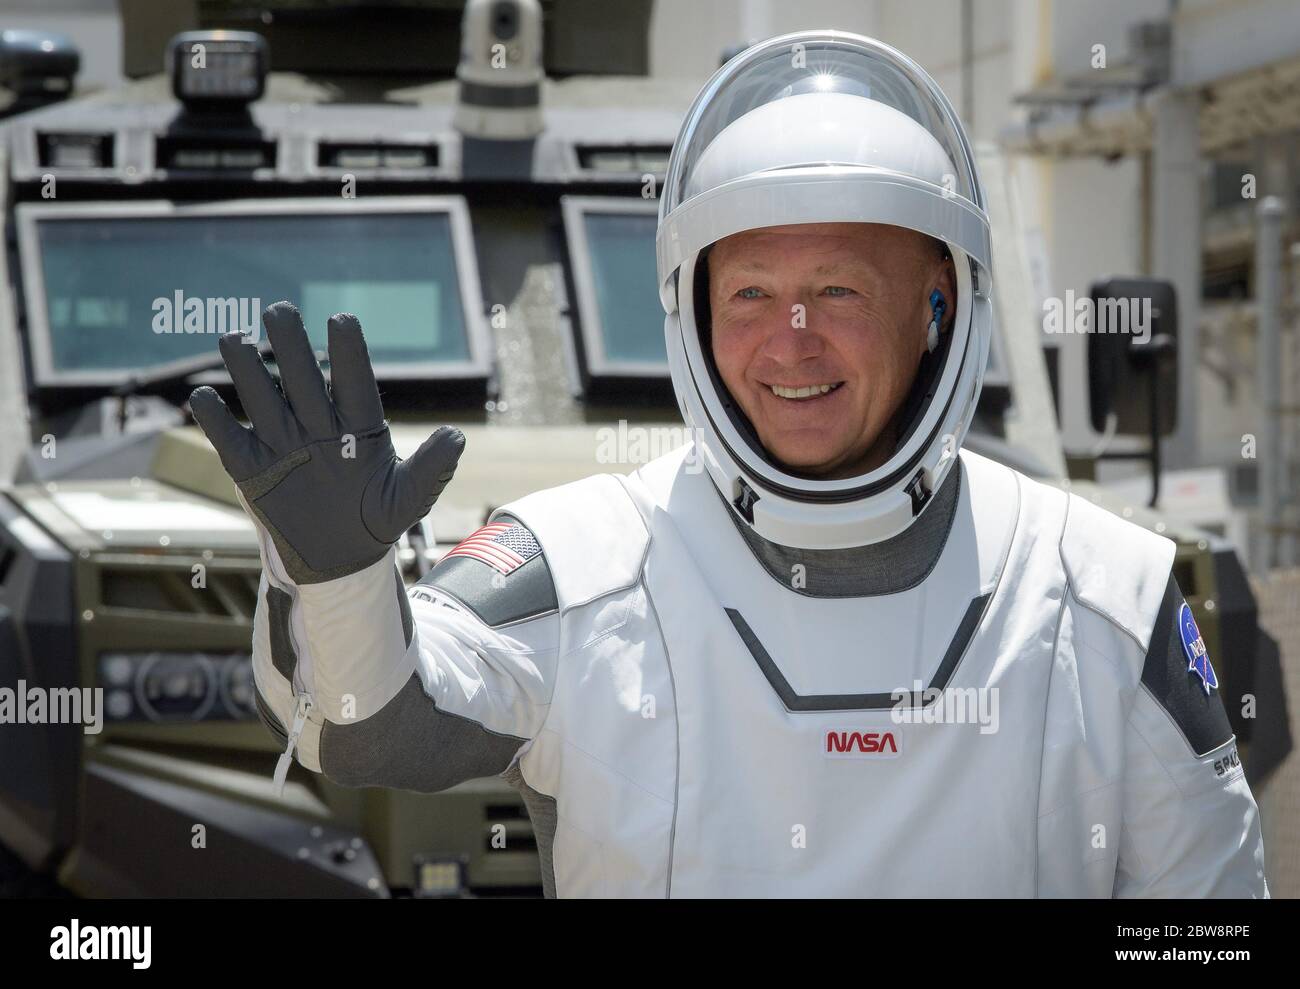 (200530) -- CABO CAÑAVERAL (EE.UU.), 30 de mayo de 2020 (Xinhua) -- el astronauta de la NASA Doug Hurley ondea mientras él y Bob Behnken salen hacia el complejo de lanzamiento 39A en el Centro Espacial Kennedy de la NASA en Florida, Estados Unidos, 30 de mayo de 2020. La NASA y SpaceX lanzaron la nave espacial Crew Dragon desde el Centro Espacial Kennedy de la NASA en Florida el sábado, llevando a dos astronautas americanos a la Estación Espacial Internacional (ISS). (Bill Ingalls/NASA/Handout via Xinhua) Foto de stock